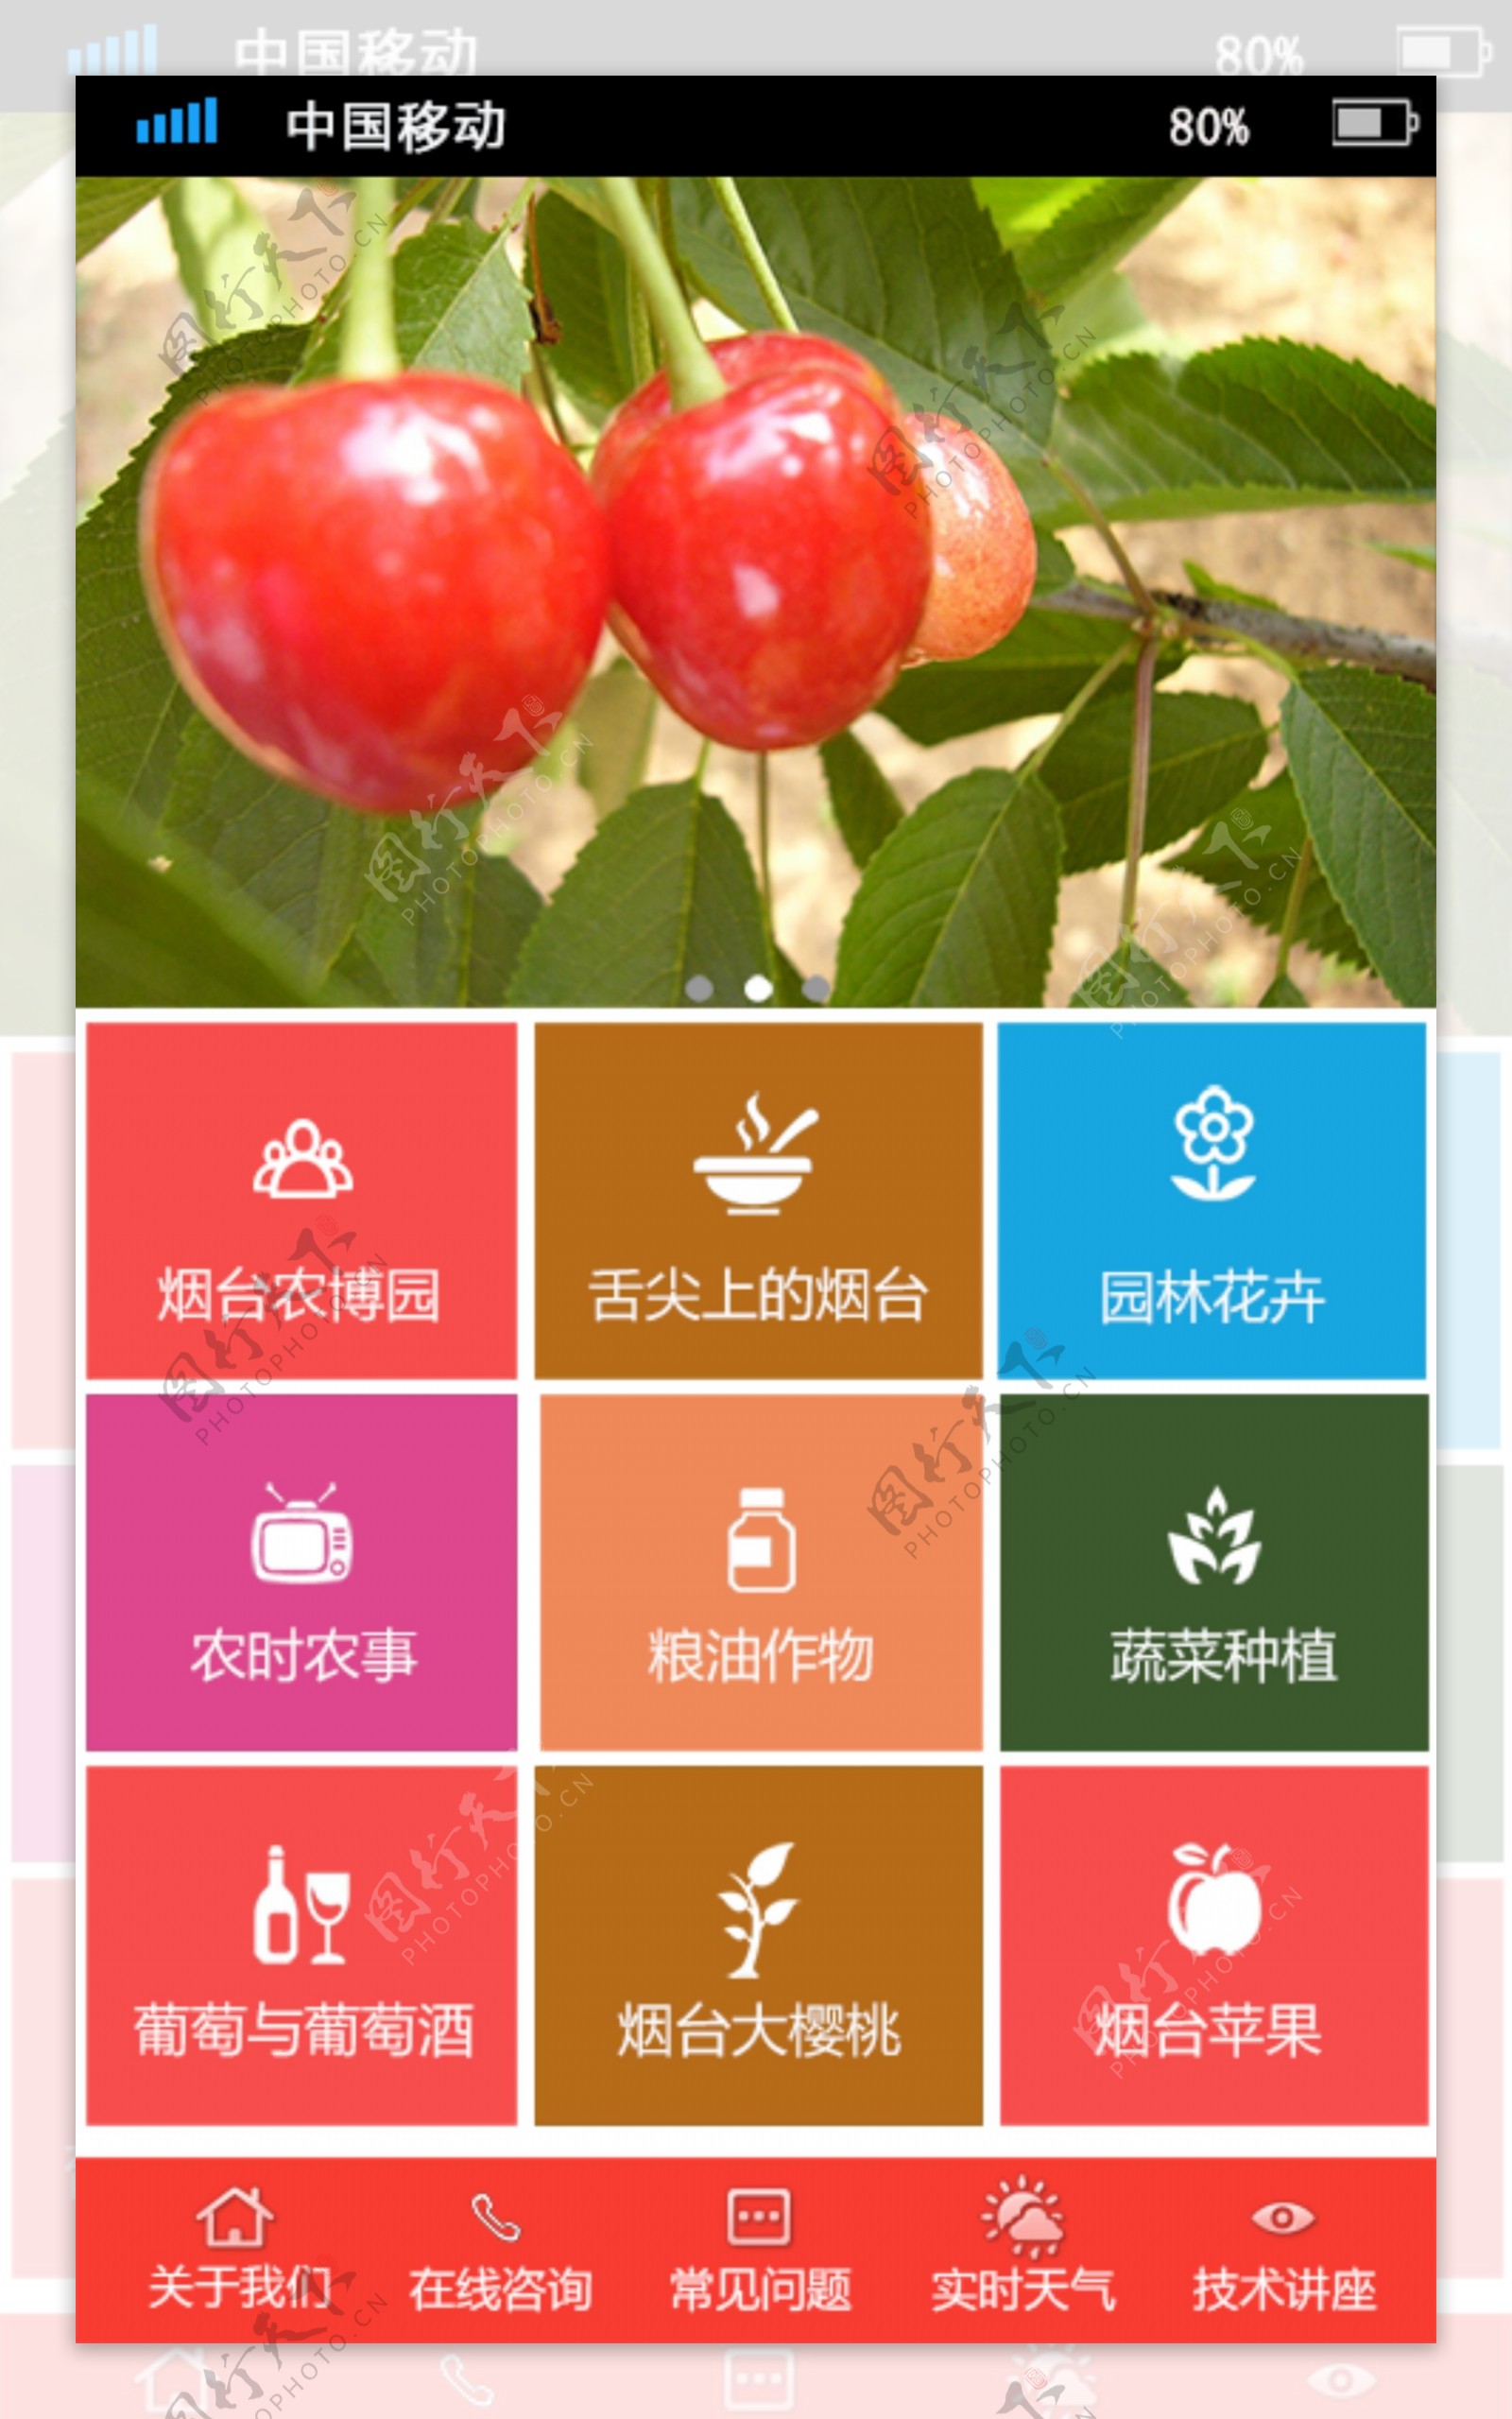 食品果蔬公司APP功能首页UI设计